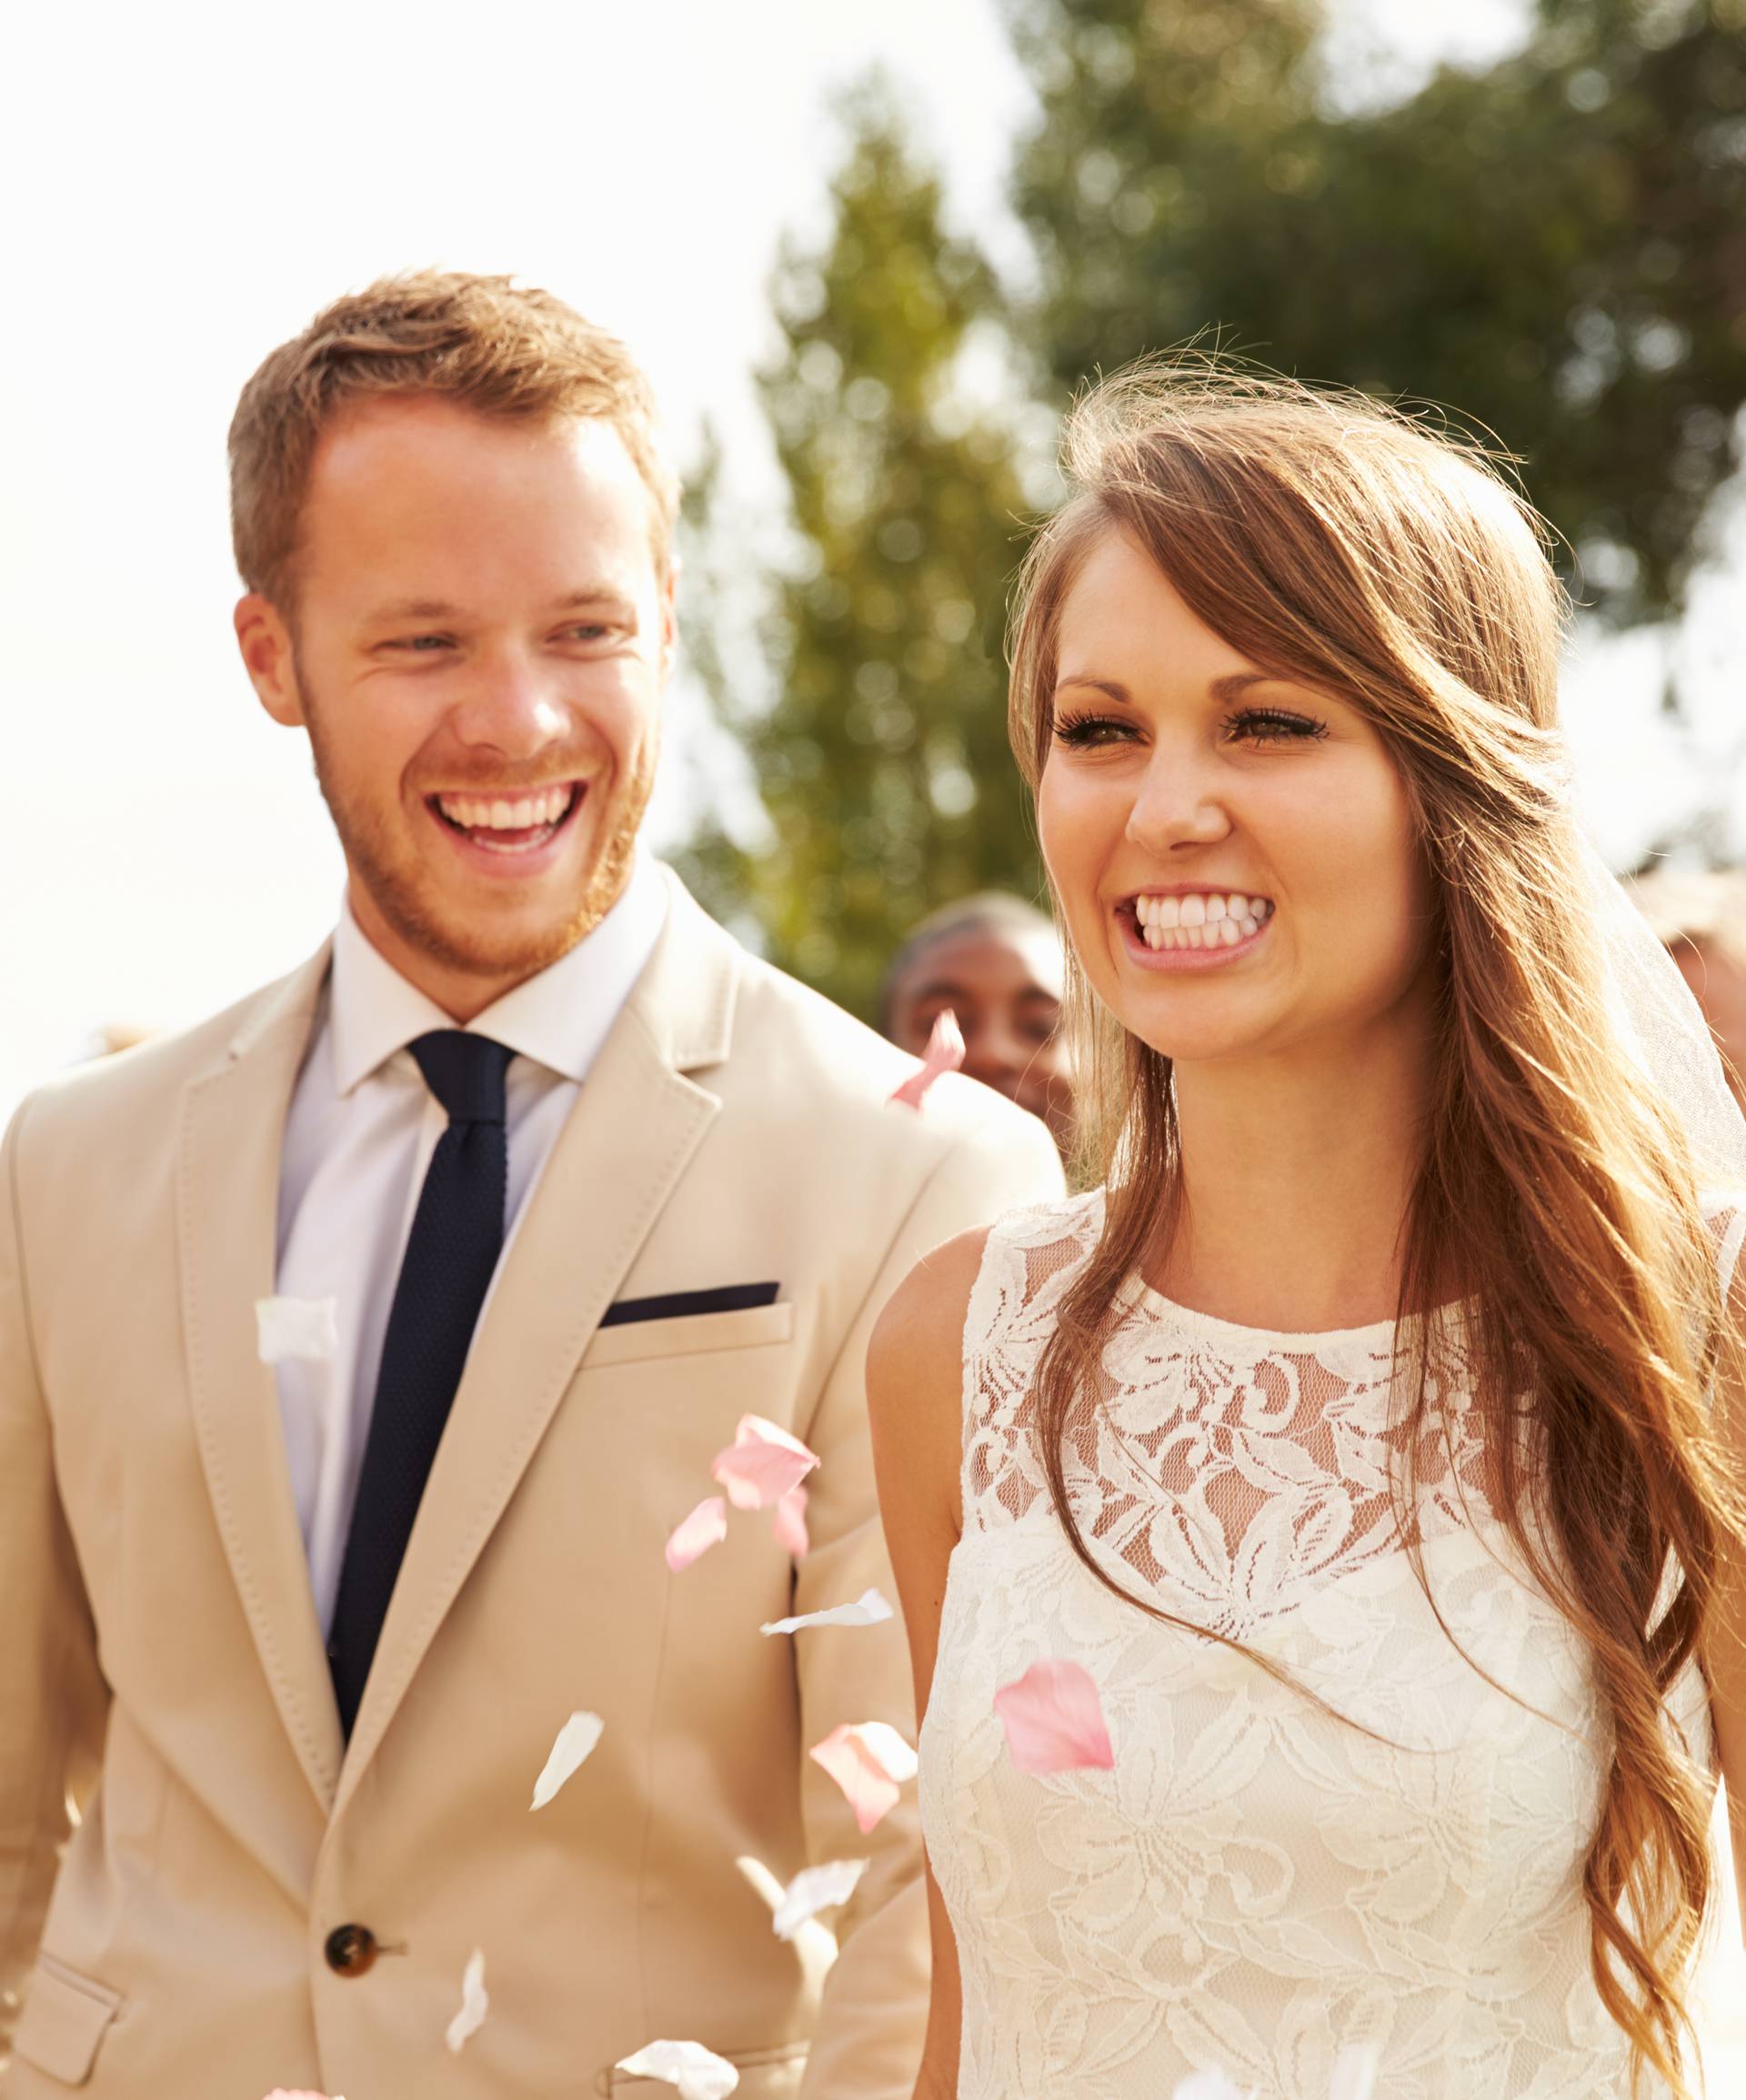 Najveće greške kod odijevanja za vjenčanje - nije samo bijela